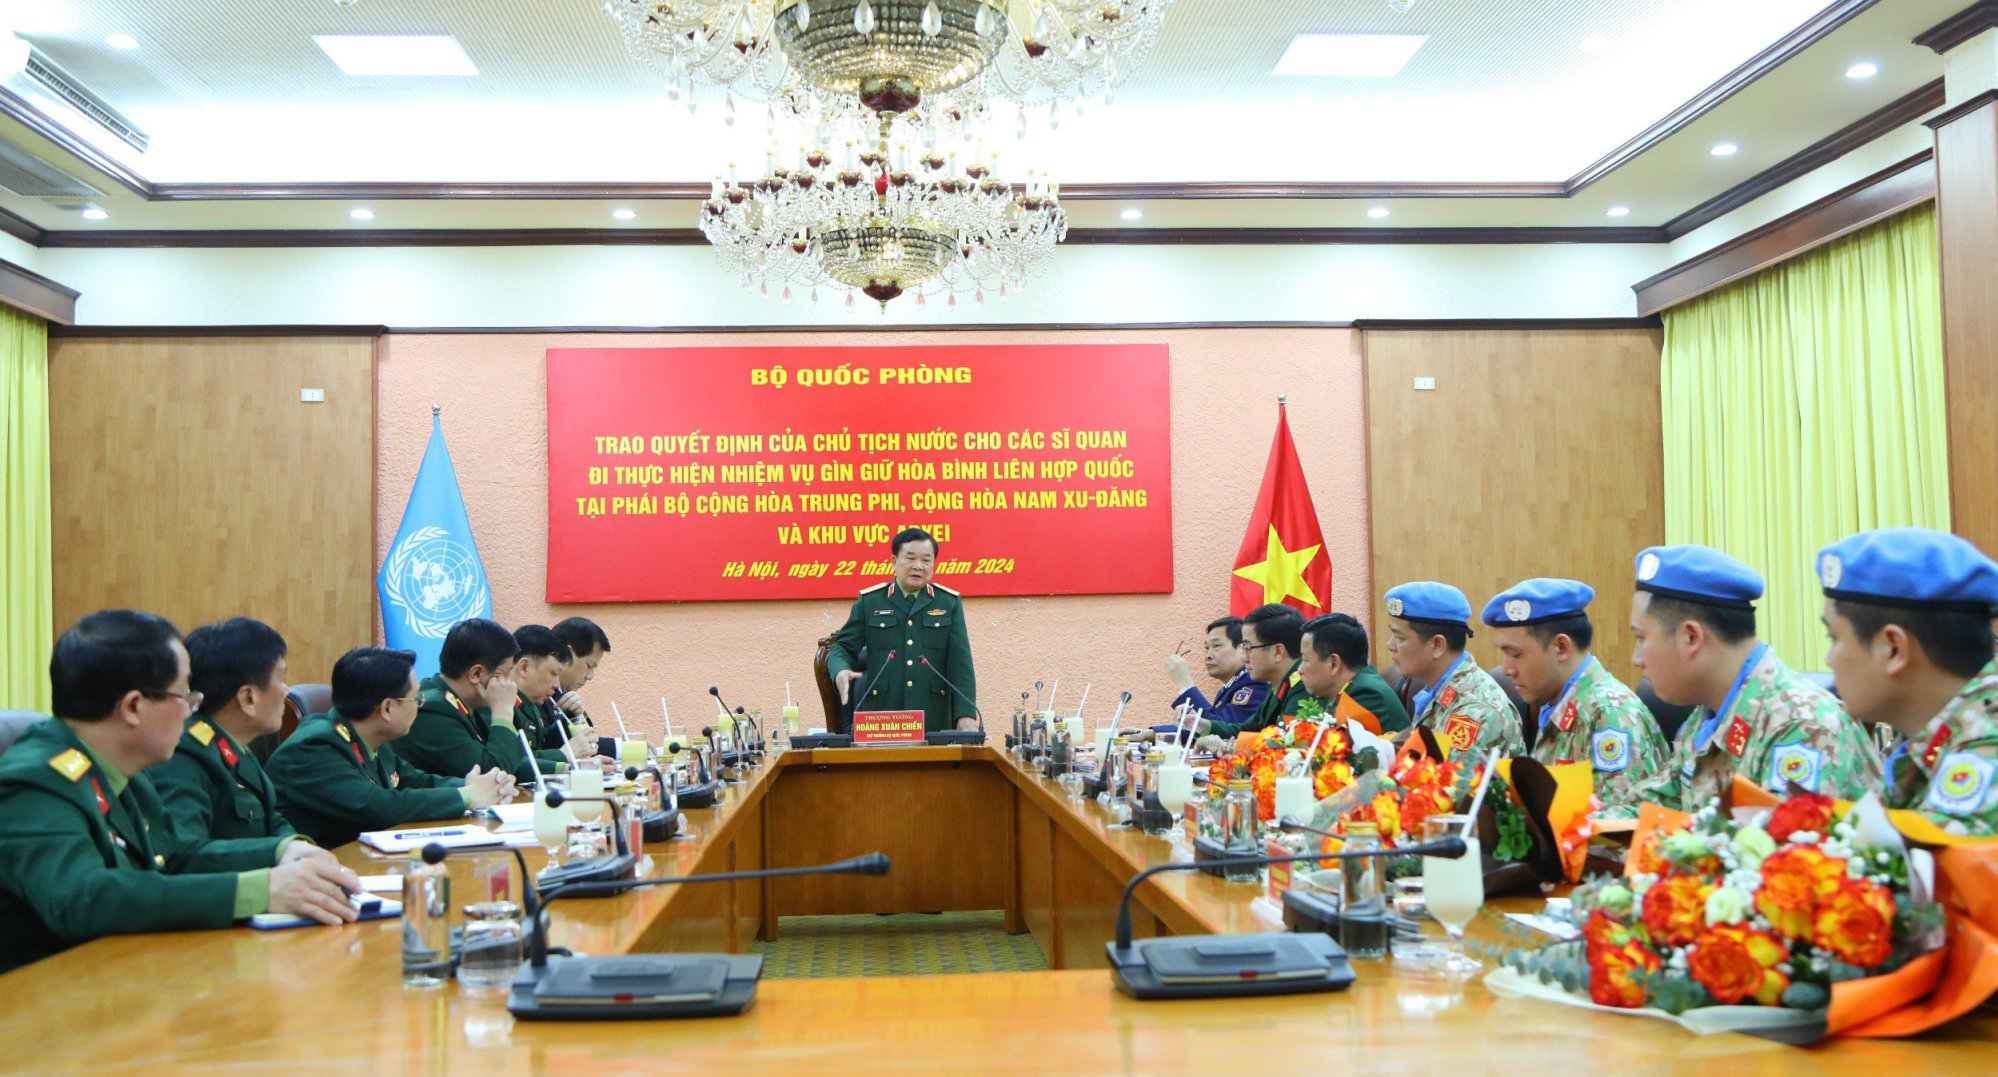 Việt Nam cử thêm 4 sĩ quan tham gia gìn giữ hòa bình Liên Hợp Quốc